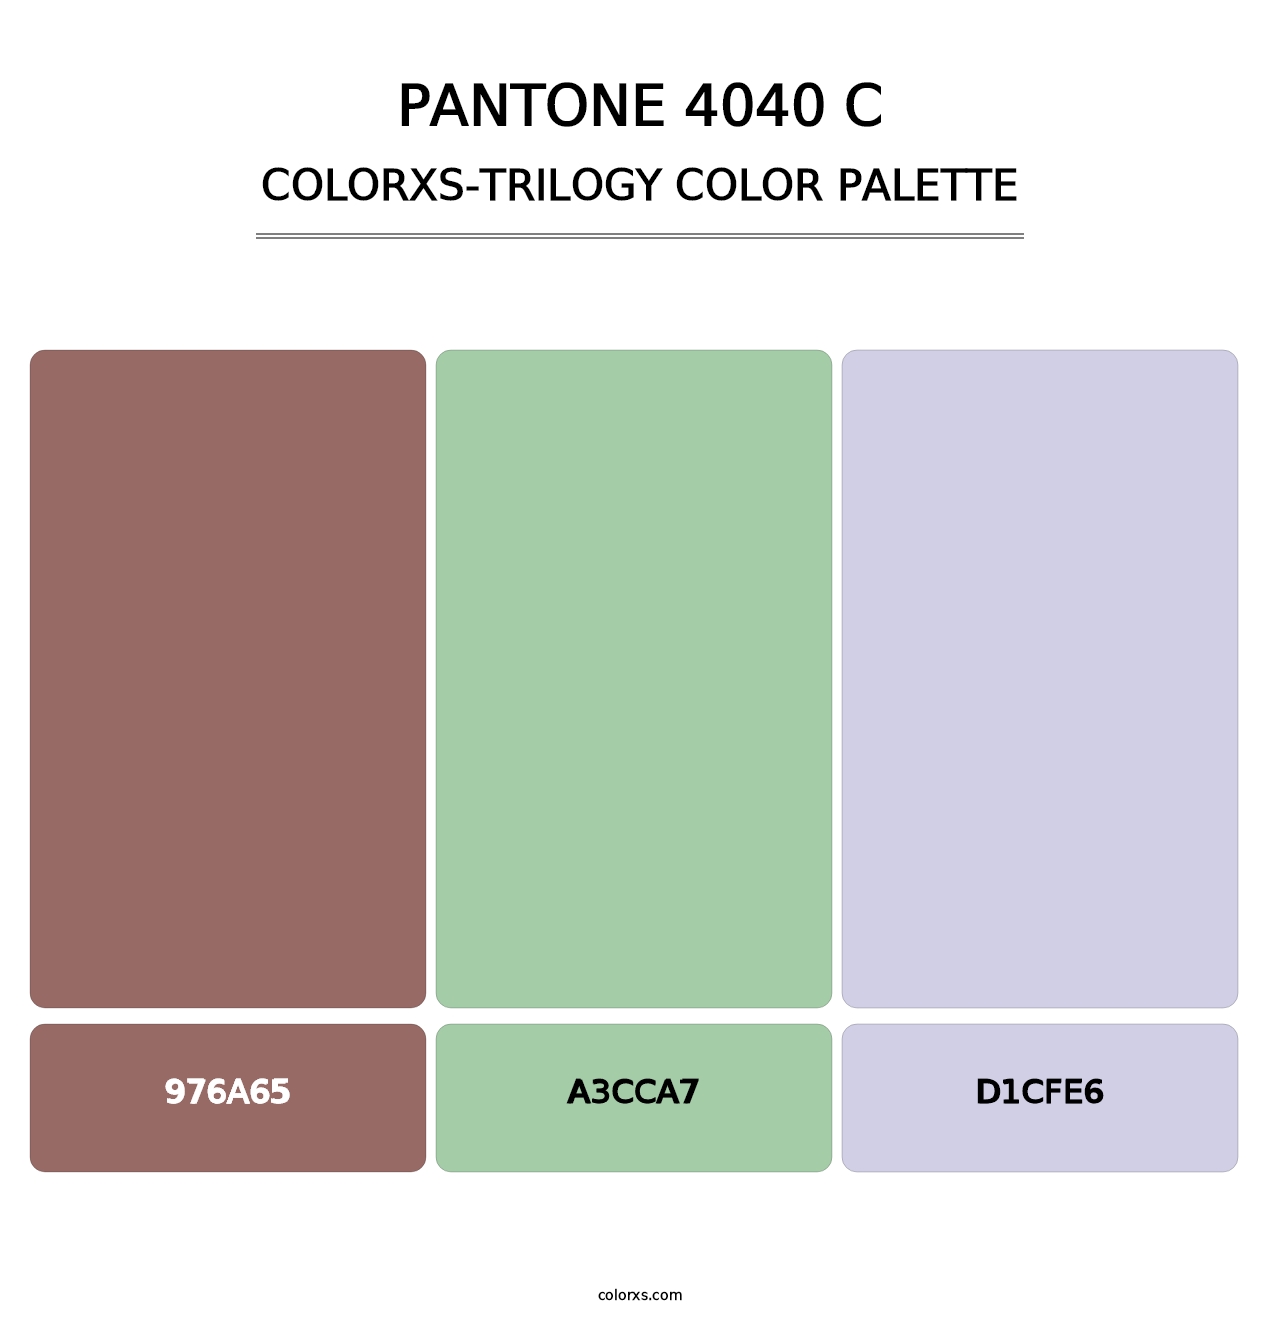 PANTONE 4040 C - Colorxs Trilogy Palette